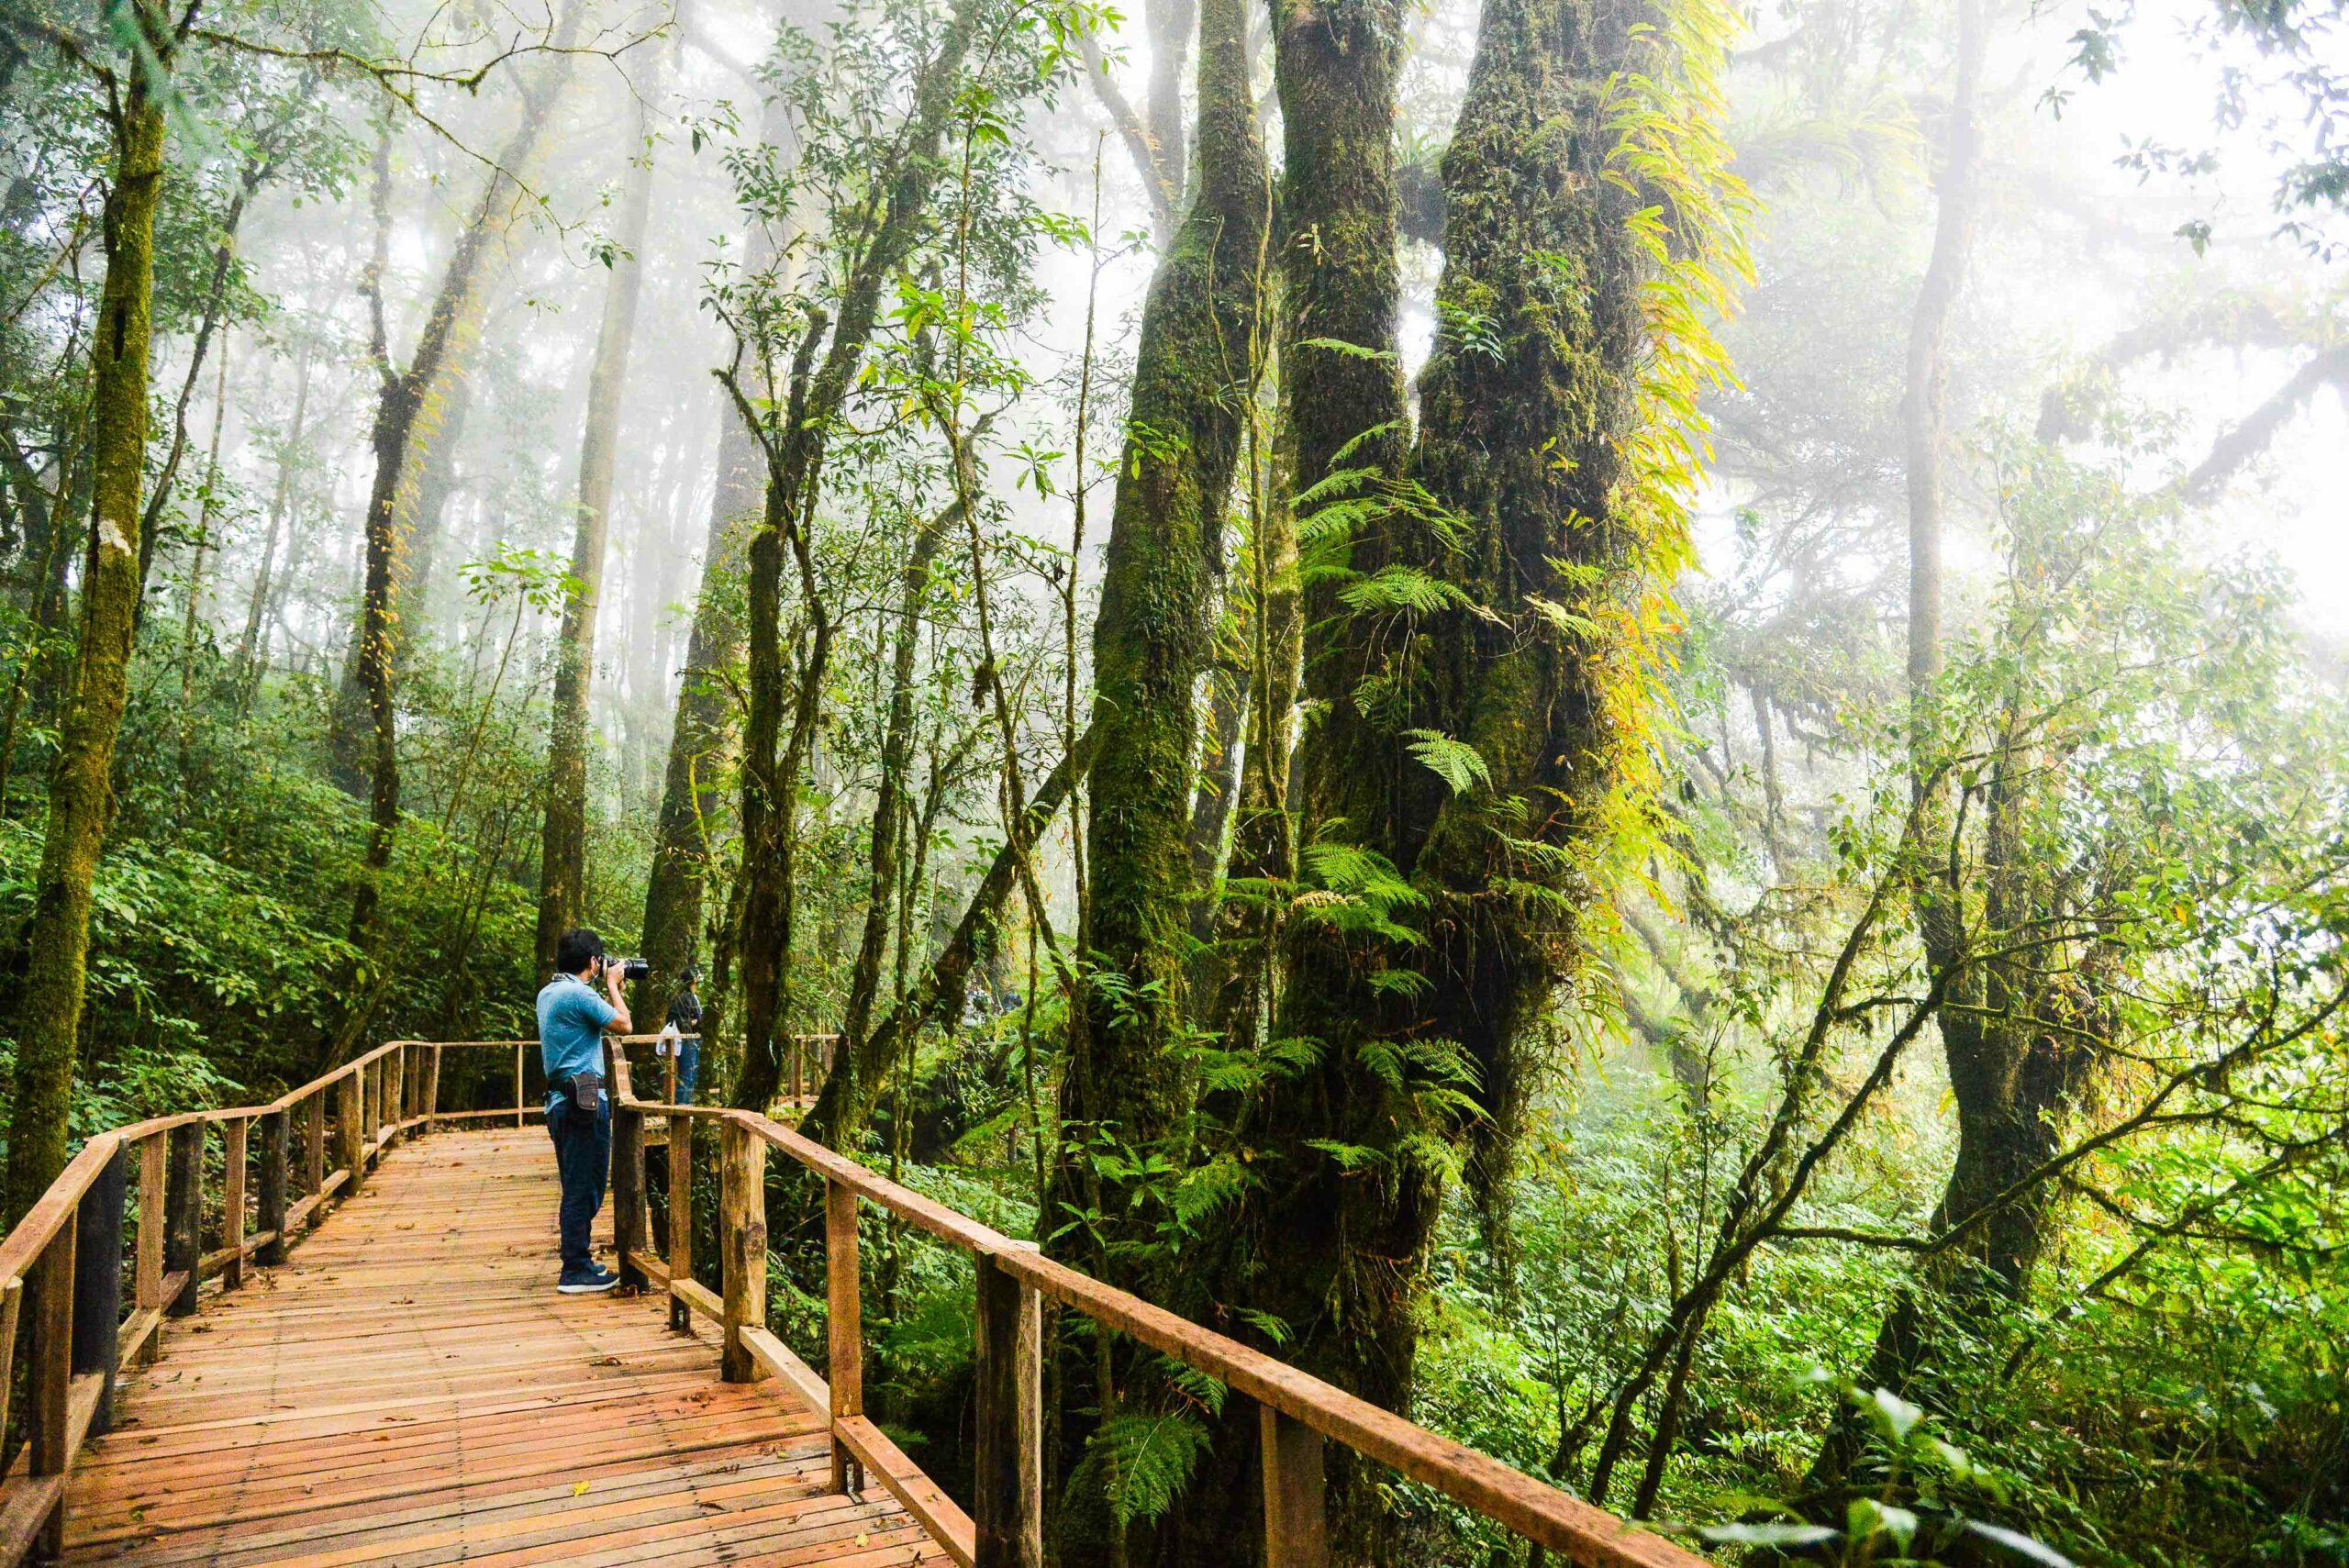 เอ็กโก กรุ๊ป ส่งมอบ 'เส้นทางศึกษาธรรมชาติอ่างกา' ป่าพรุภูเขาสูงที่สุดของไทย